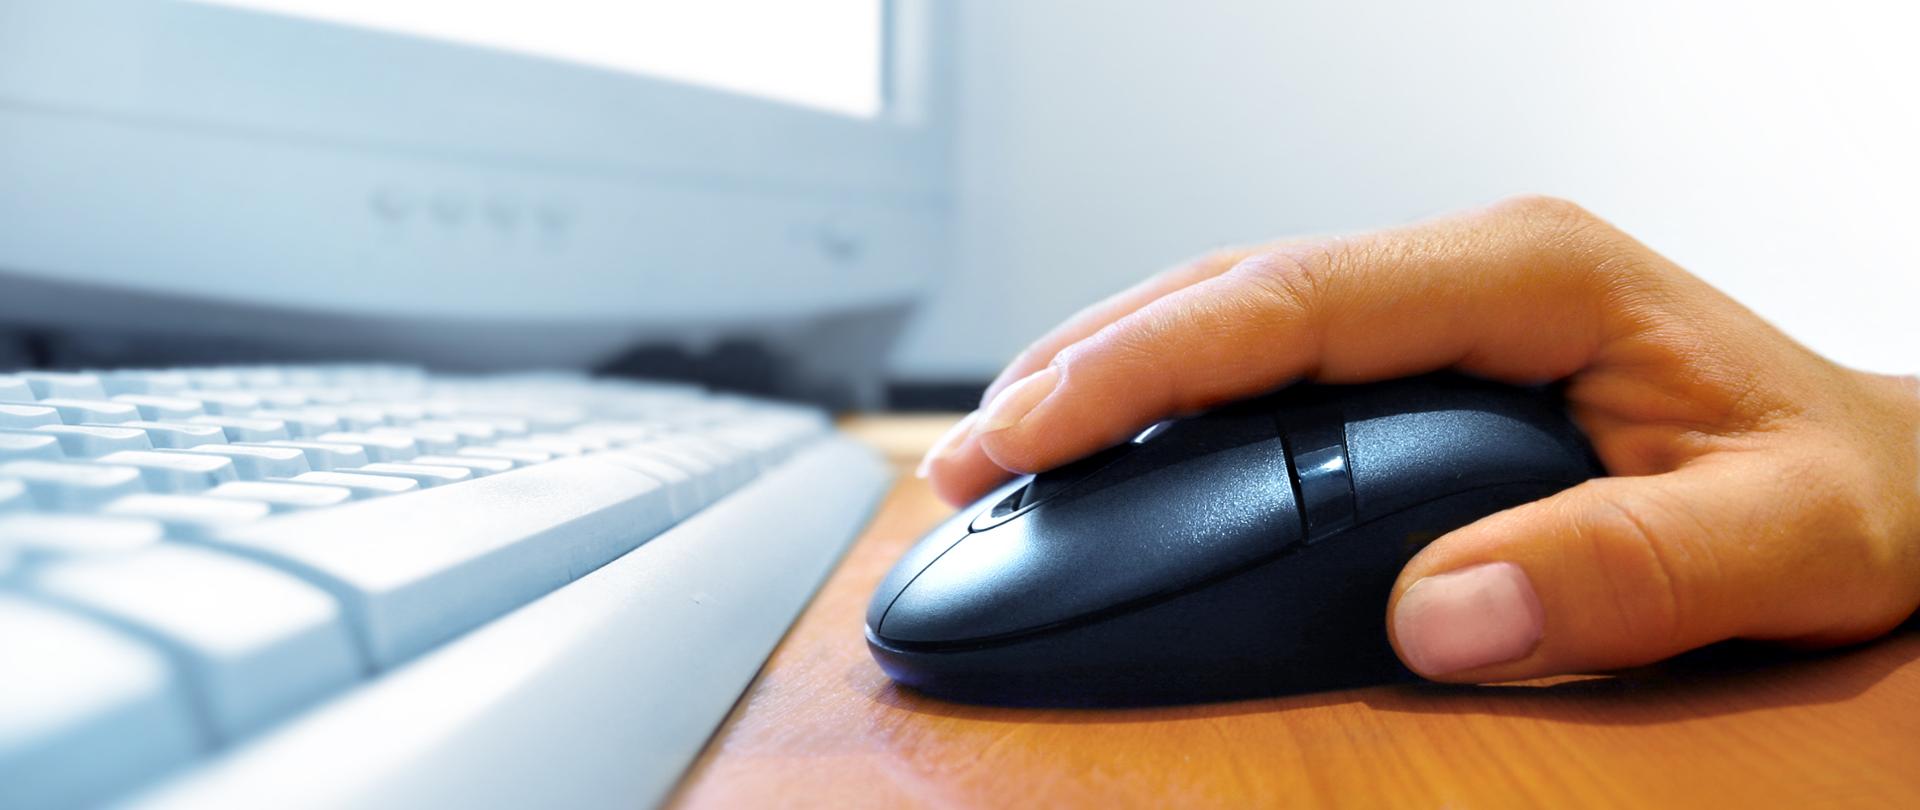 Na obrazku widać dłoń trzymającą mysz komputerową, przed nią klawiatura i monitor.